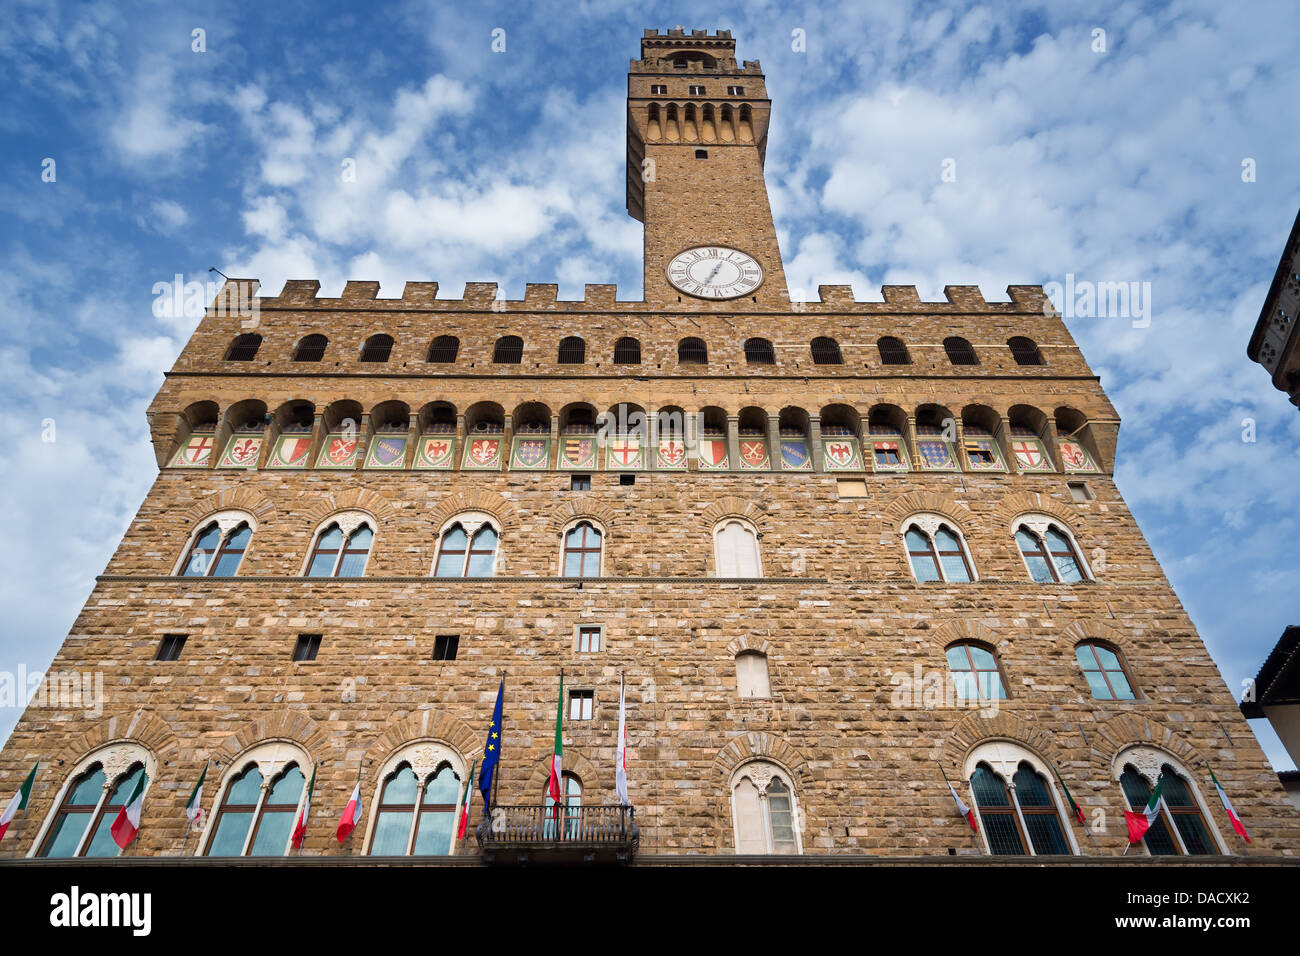 Palazzo Vecchio on Piazza della Signoria. Florence, Italy Stock Photo